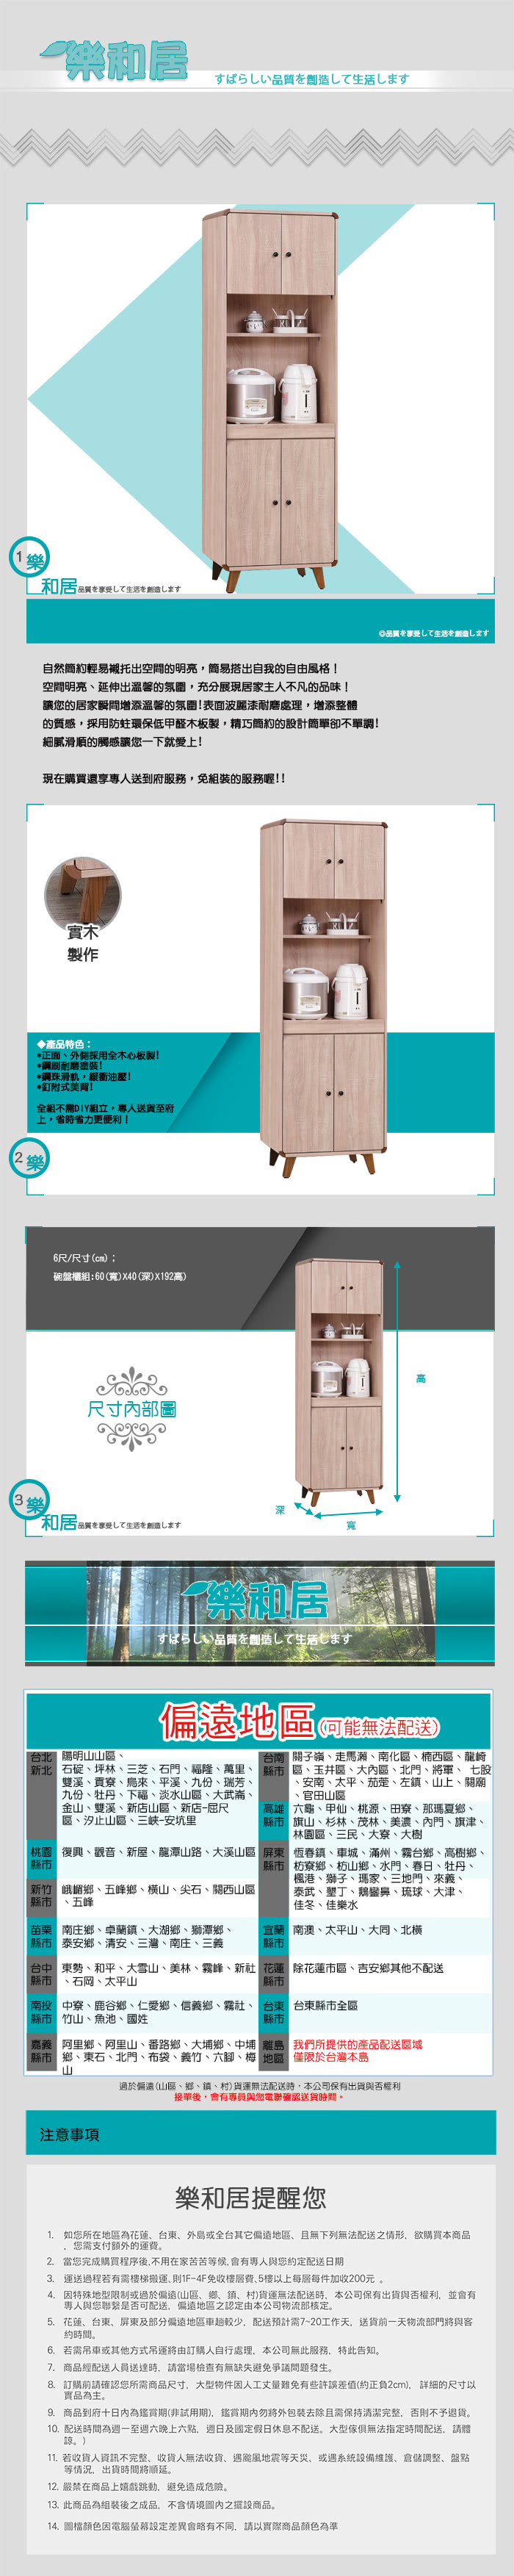 【樂和居】伯斯6尺高收納餐櫃(邊條+腳架全實木製)